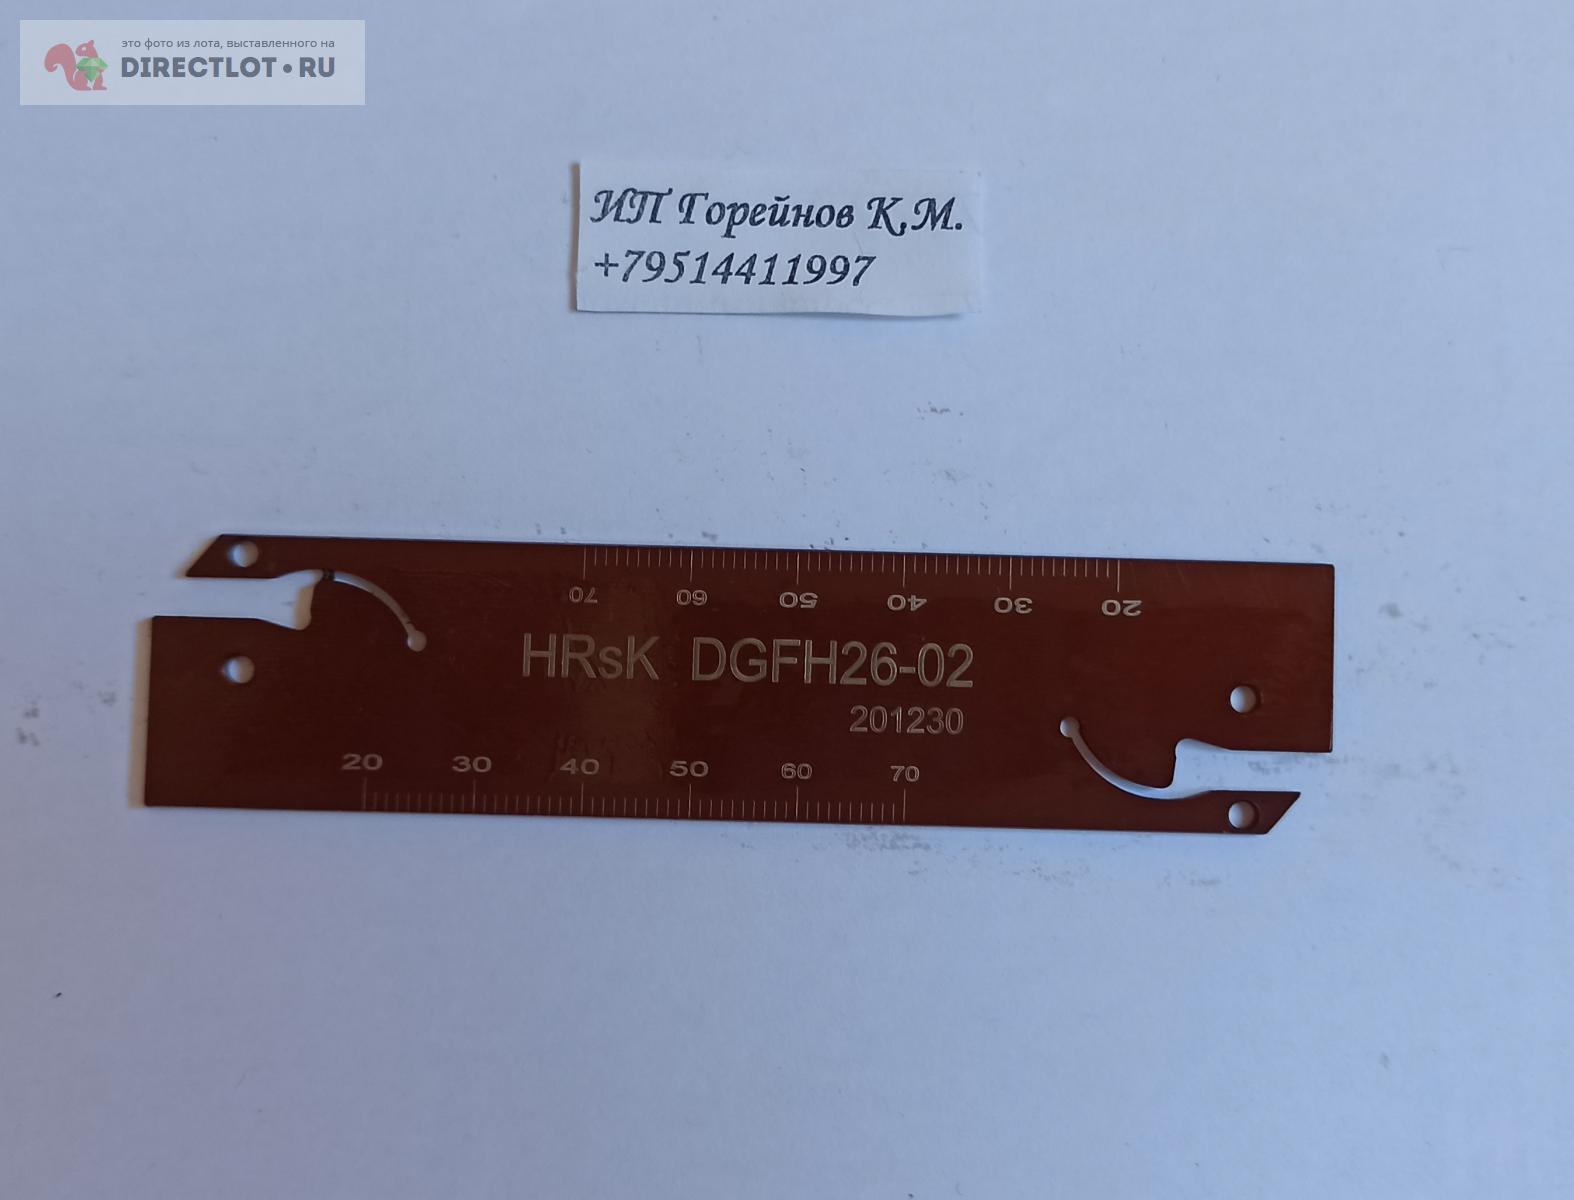 Отрезное лезвие HRSK DGFH26-02 купить в Челябинске цена 2136 Р на